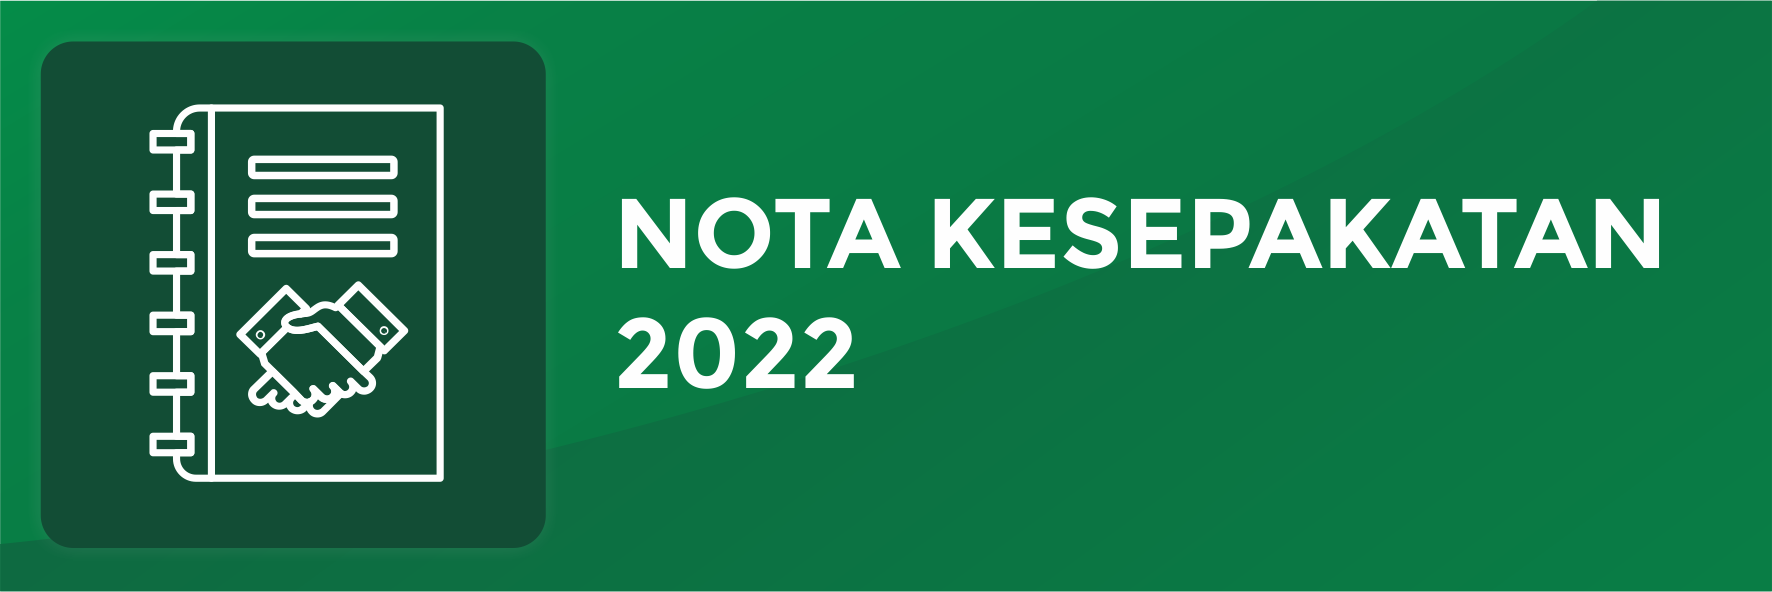 Nota Kesepakatan 2022